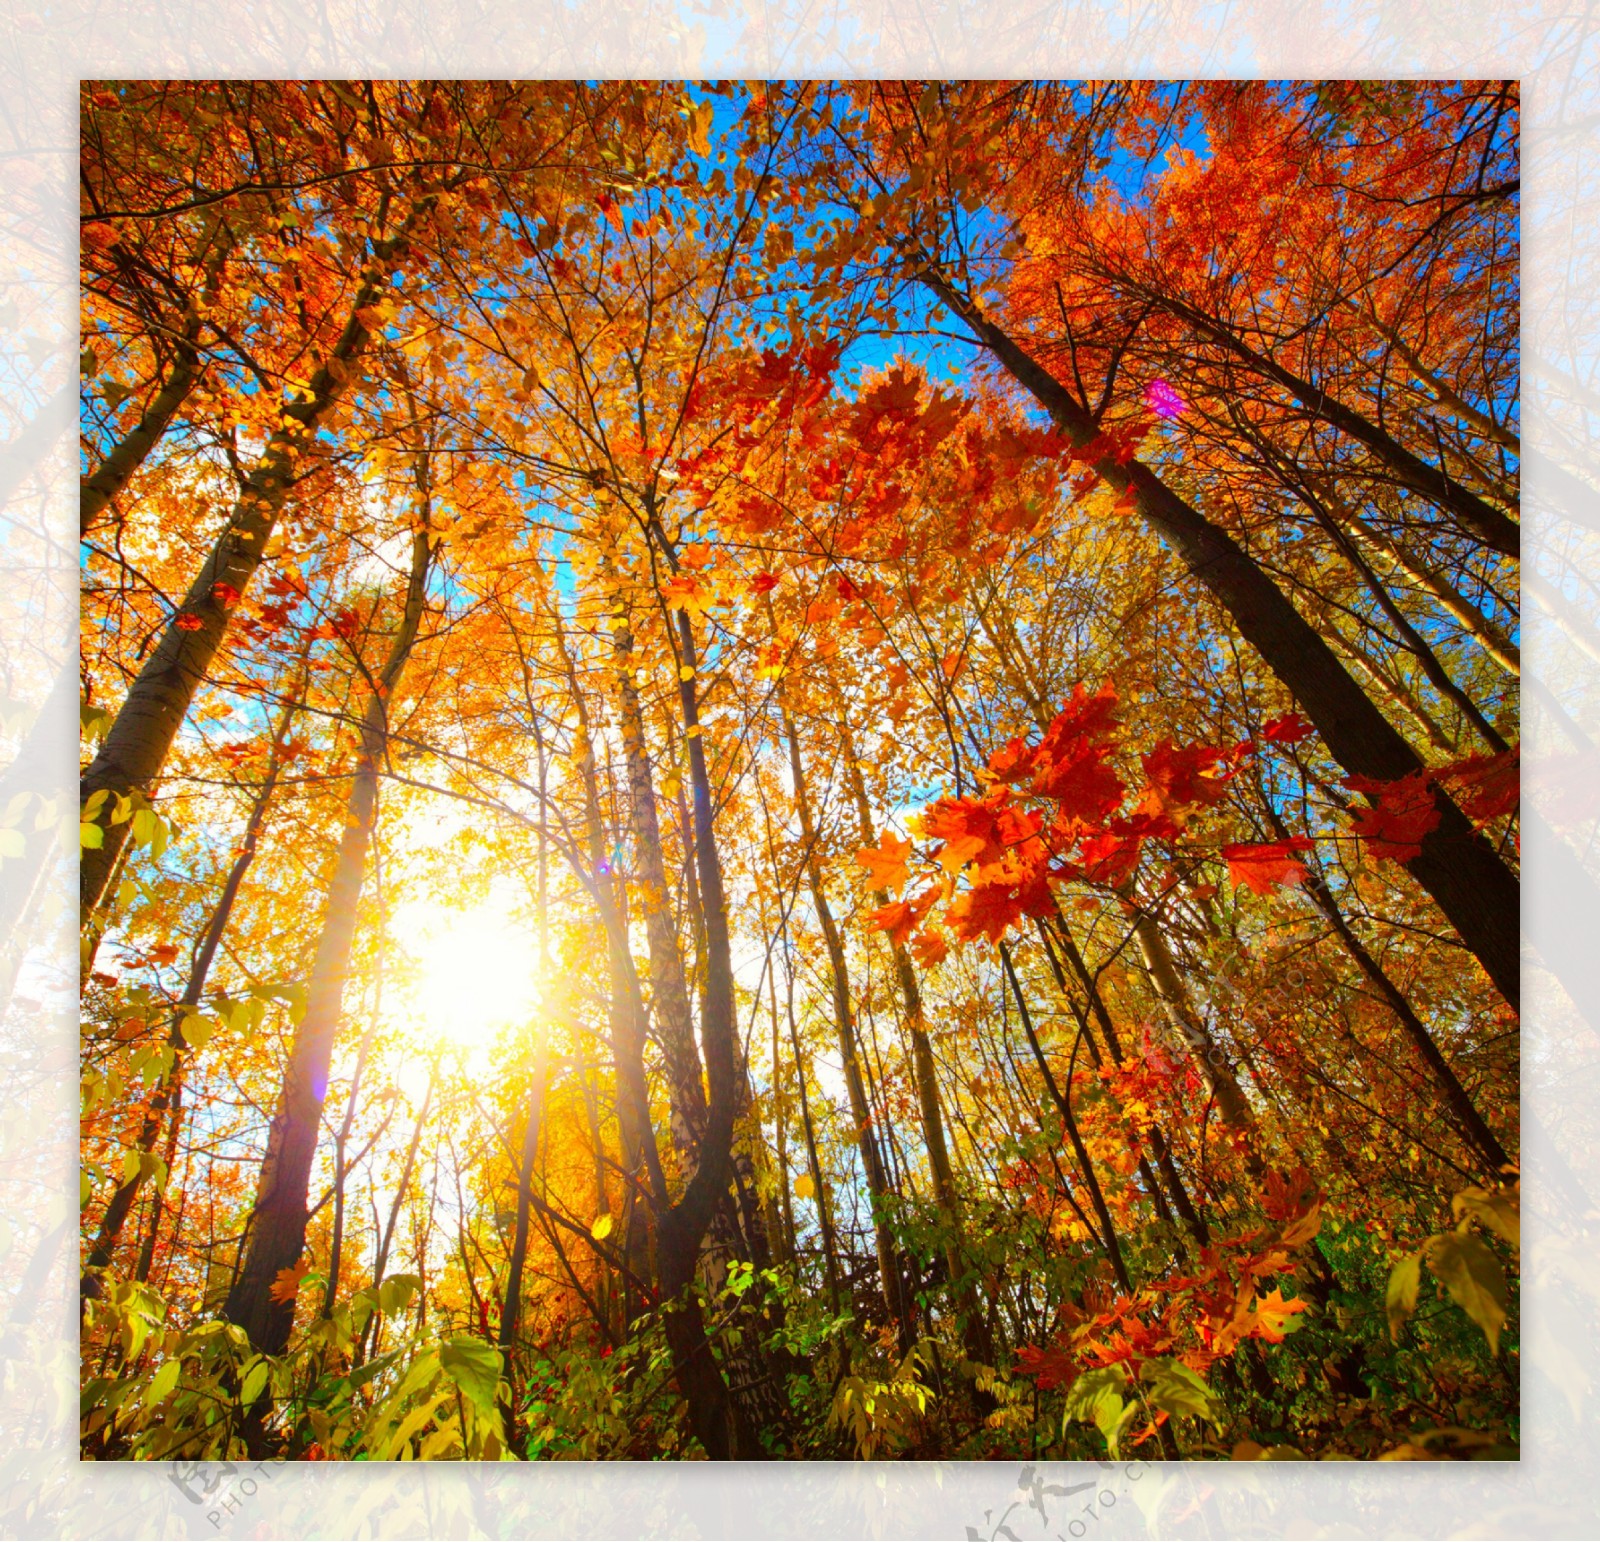 秋天树林阳光风景图片